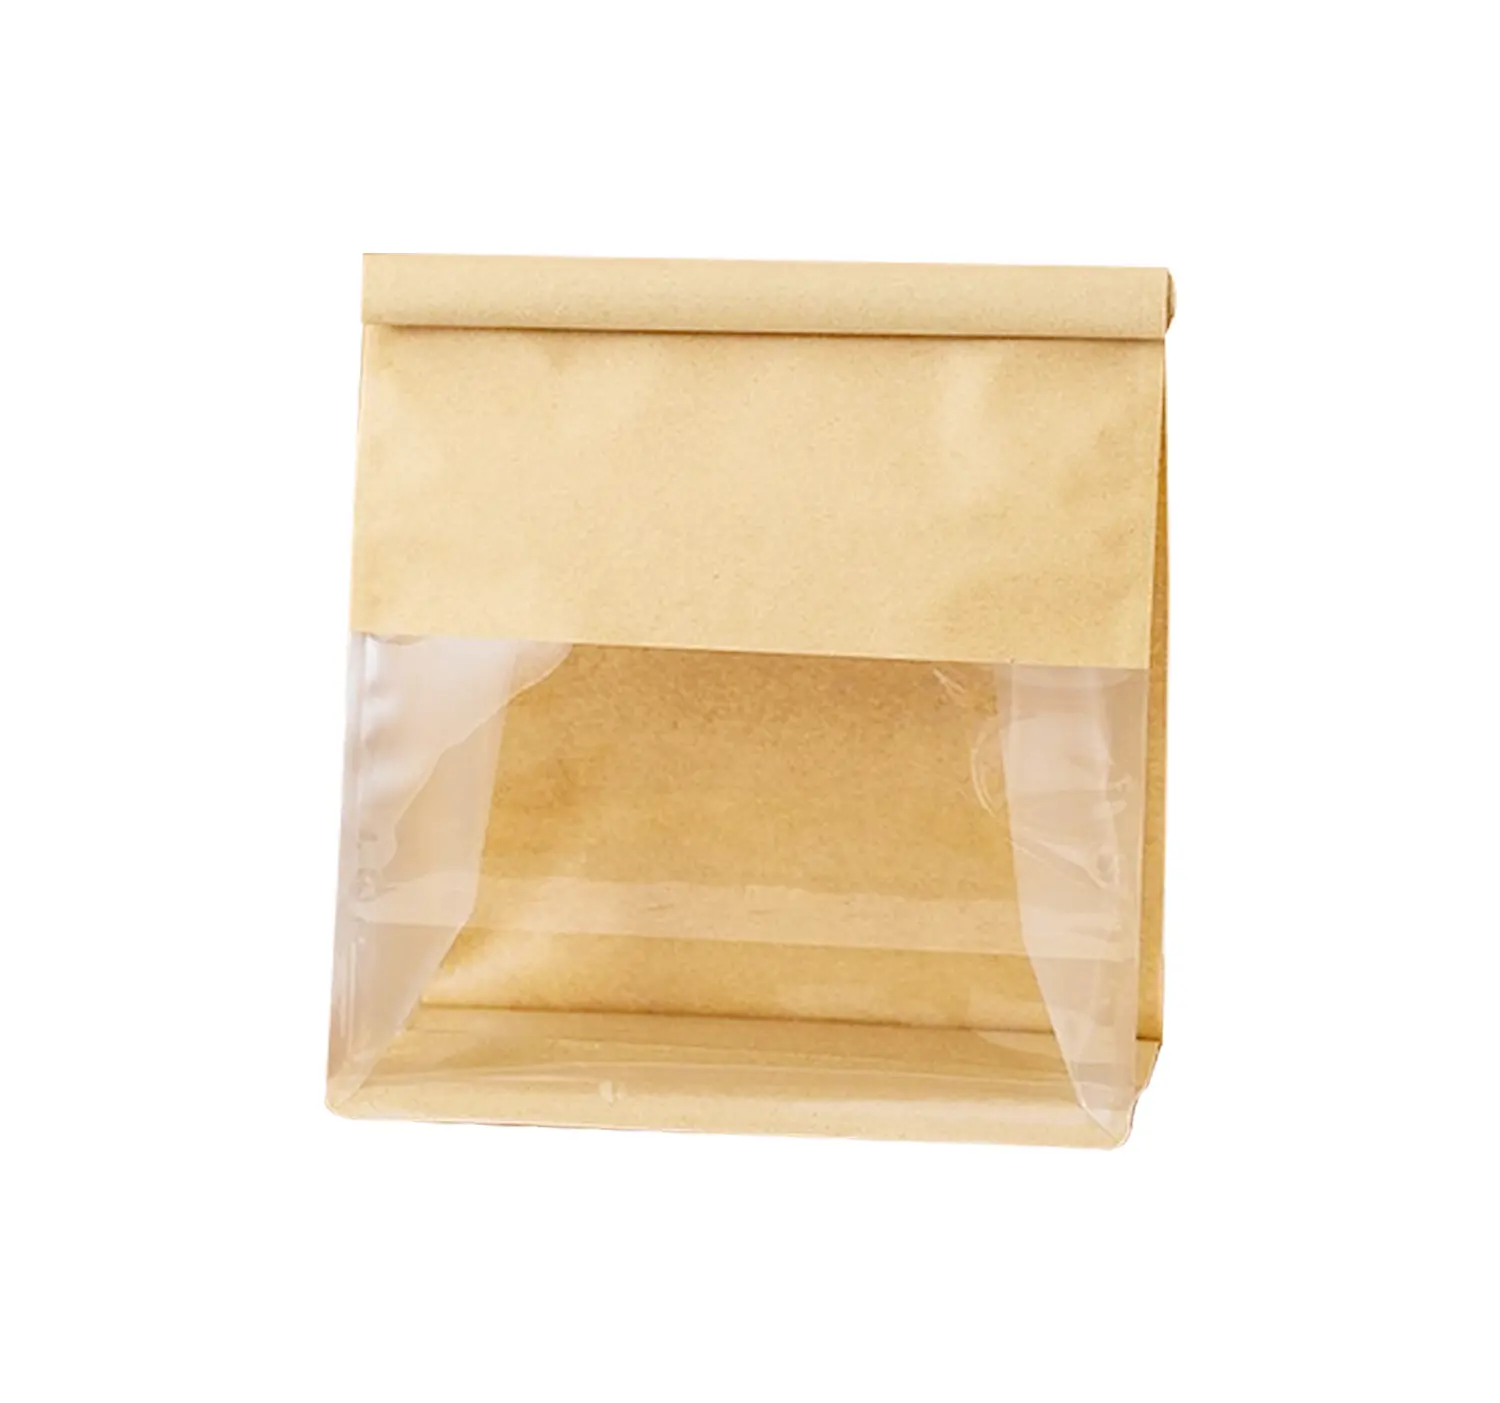 ถุงขนมปังถุงขนมปังถุงกระดาษคราฟท์ที่มีหน้าต่างพลาสติกปิดผนึกแปดด้านกันไขมันสีขาวอาหารสีน้ำตาล